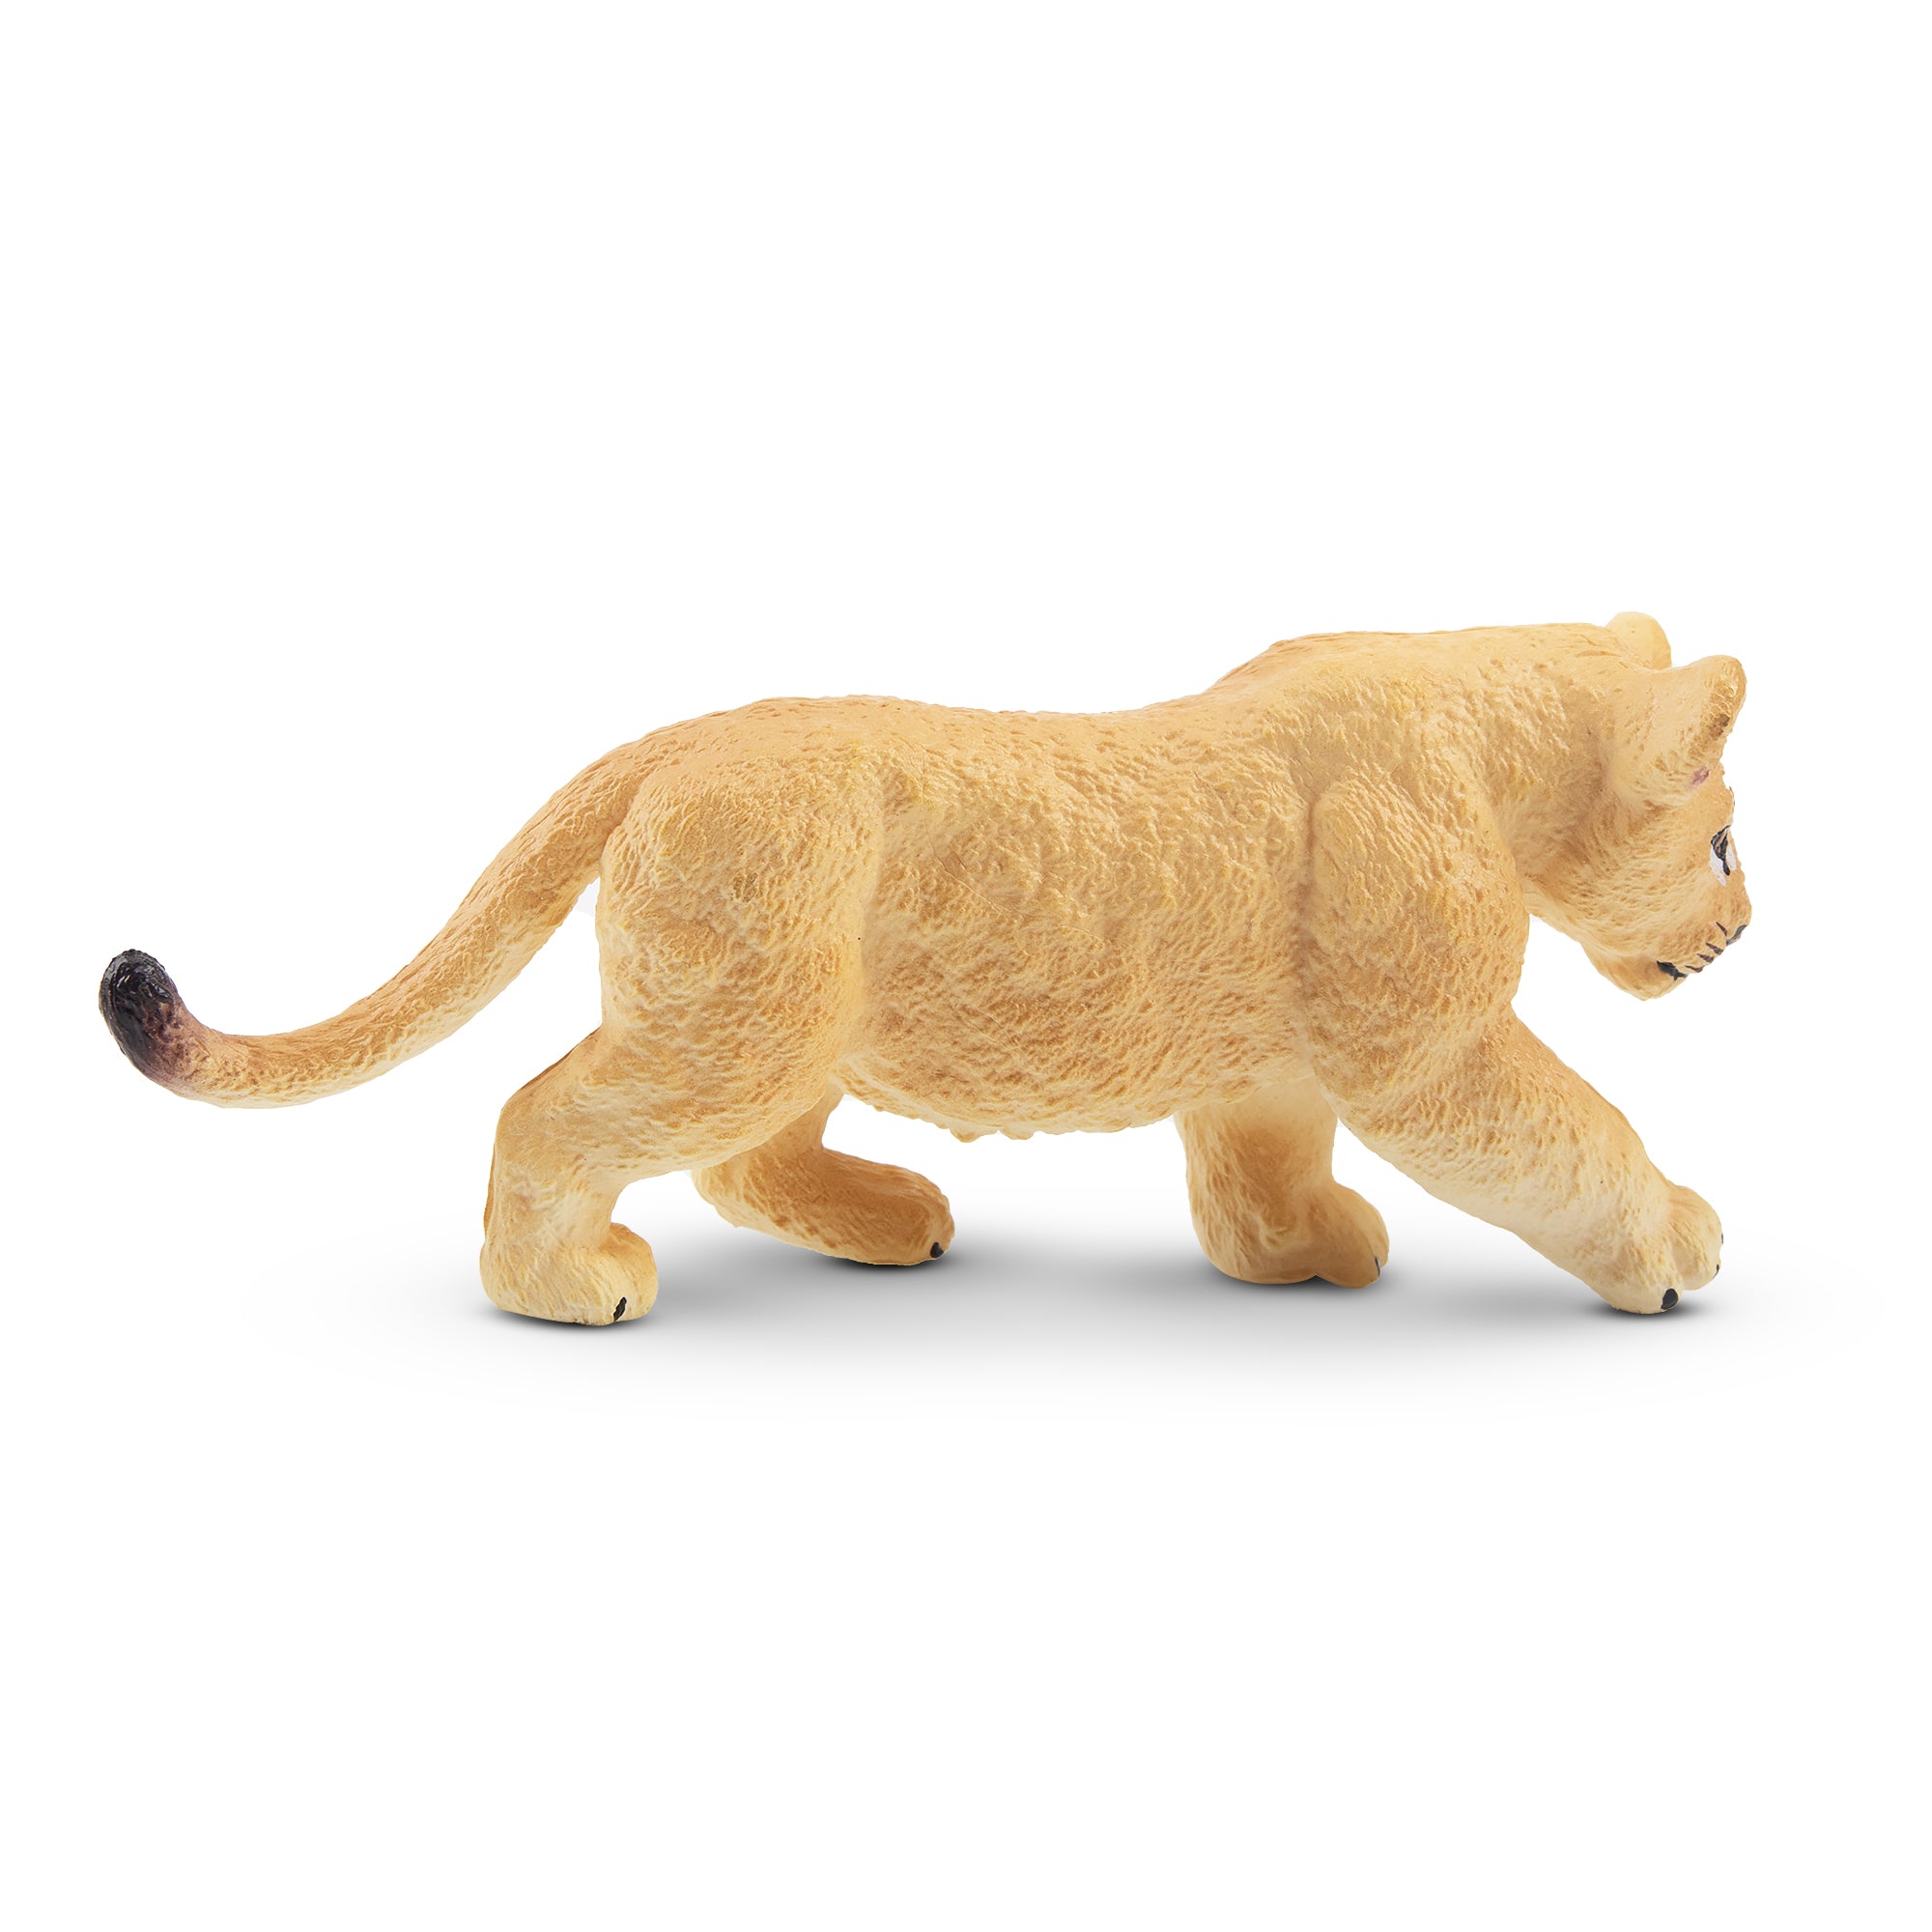 Toymany Walking Lion Cub Figurine Toy - 1-2